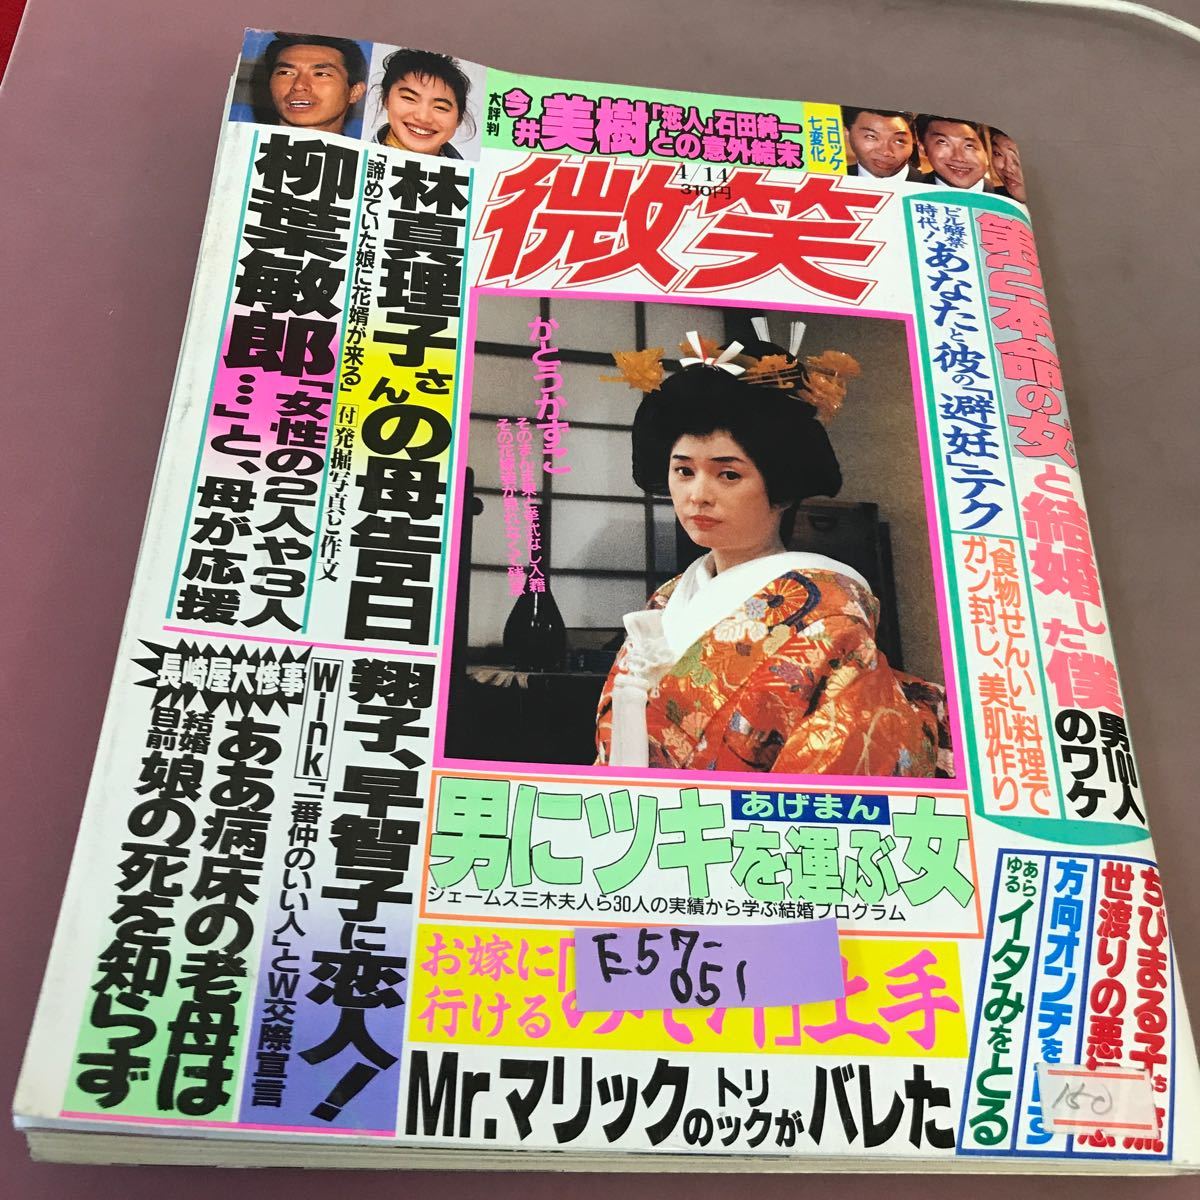 E57-051 Smile 14 апреля выпуск Shodosha, выпущенный 14 апреля 1991 года Марико Хаяси Тоширо Янагива Мики Имаи и другие письма и вставки